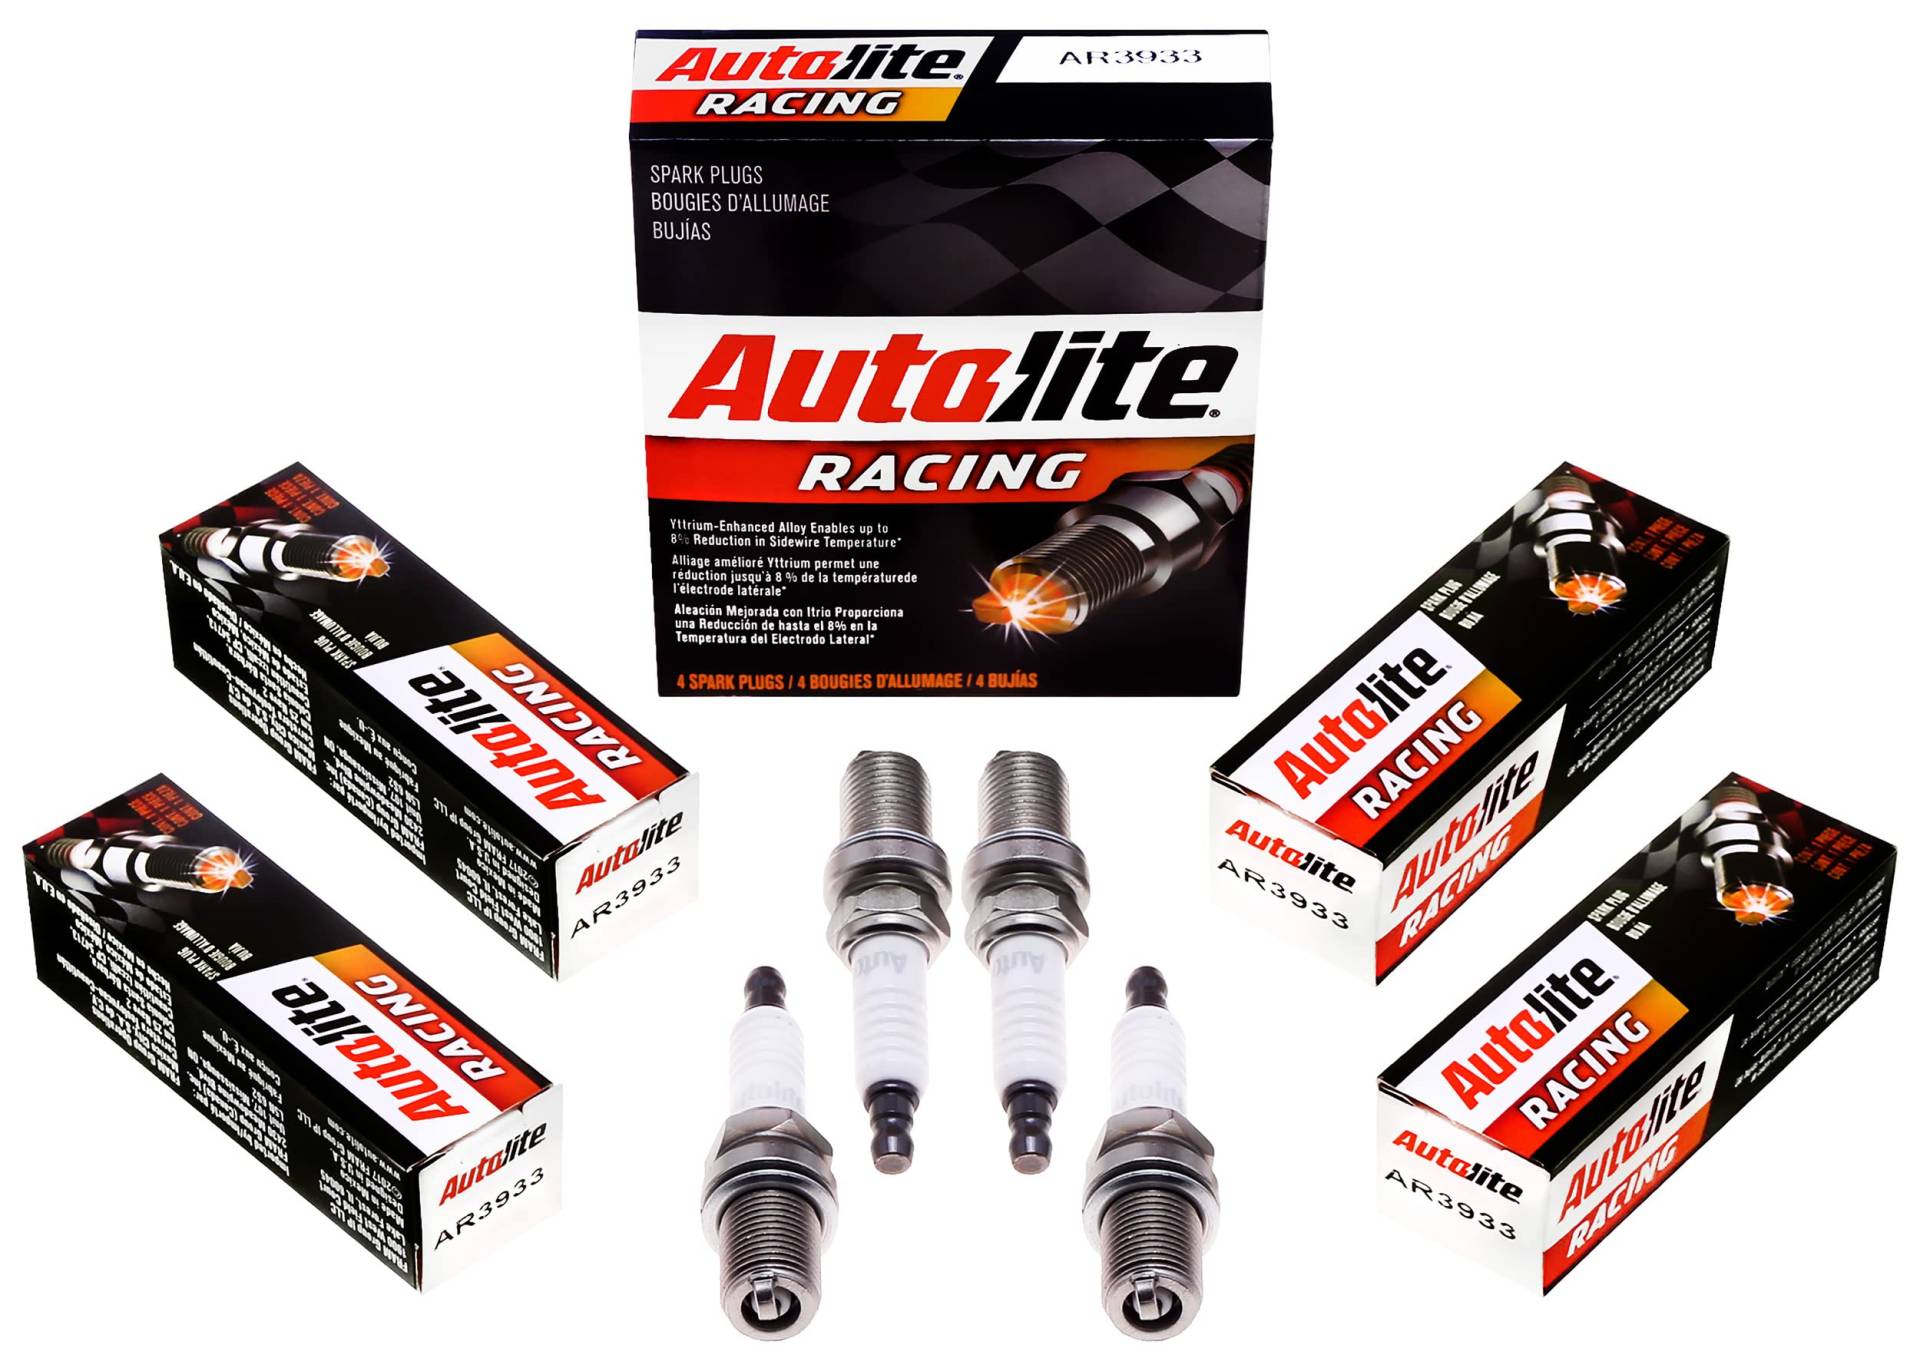 Autolite AR3933-4PK High Performance Racing Zündkerze, nicht widerstehend, 4 Stück von Autolite